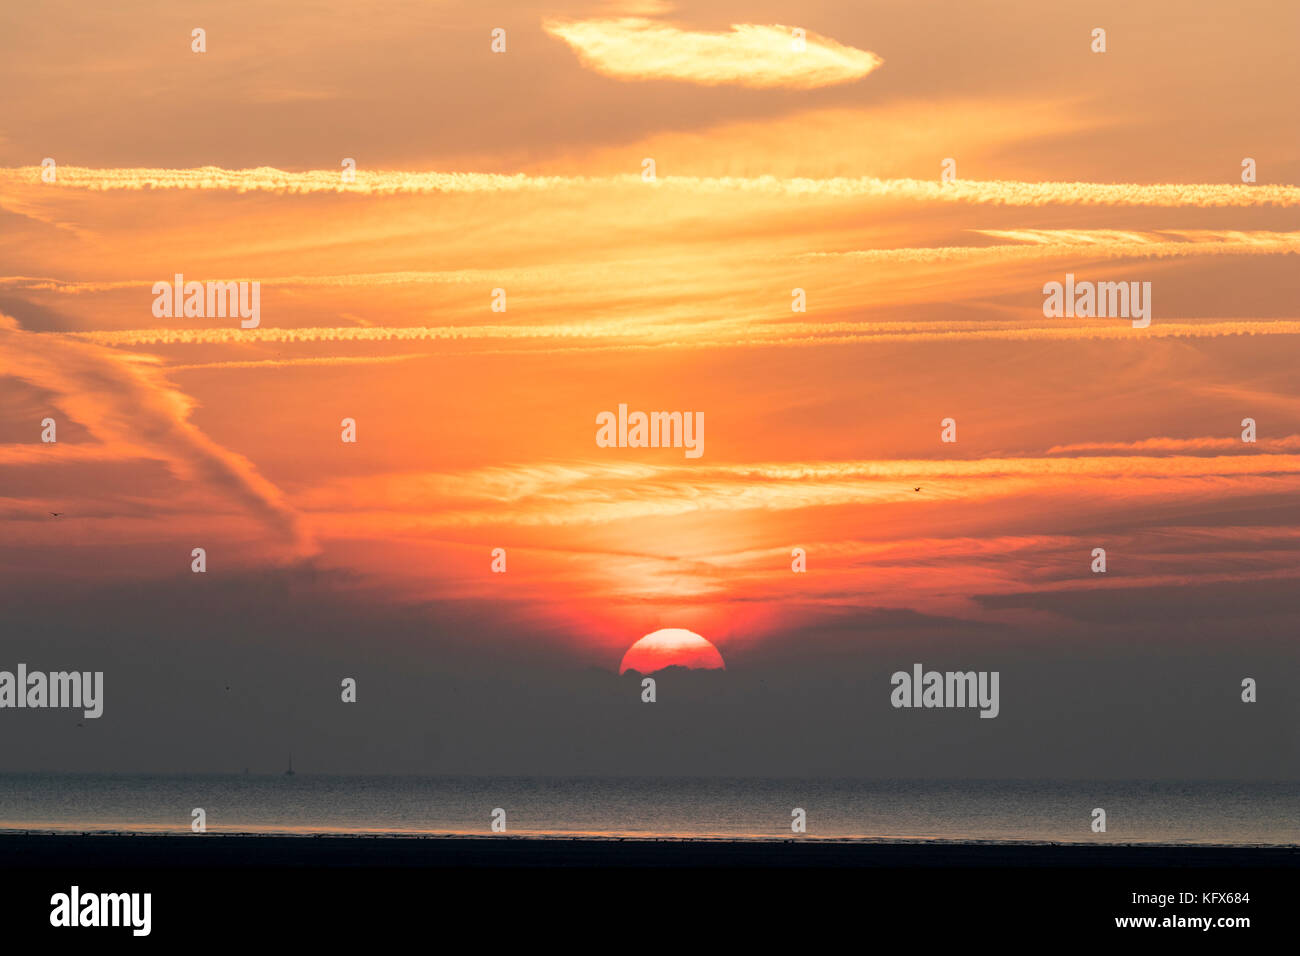 Inghilterra, Ramsgate, Pegwell Bay. Sun salire oltre il canale della Manica e la baia. Orange sky. Foto Stock